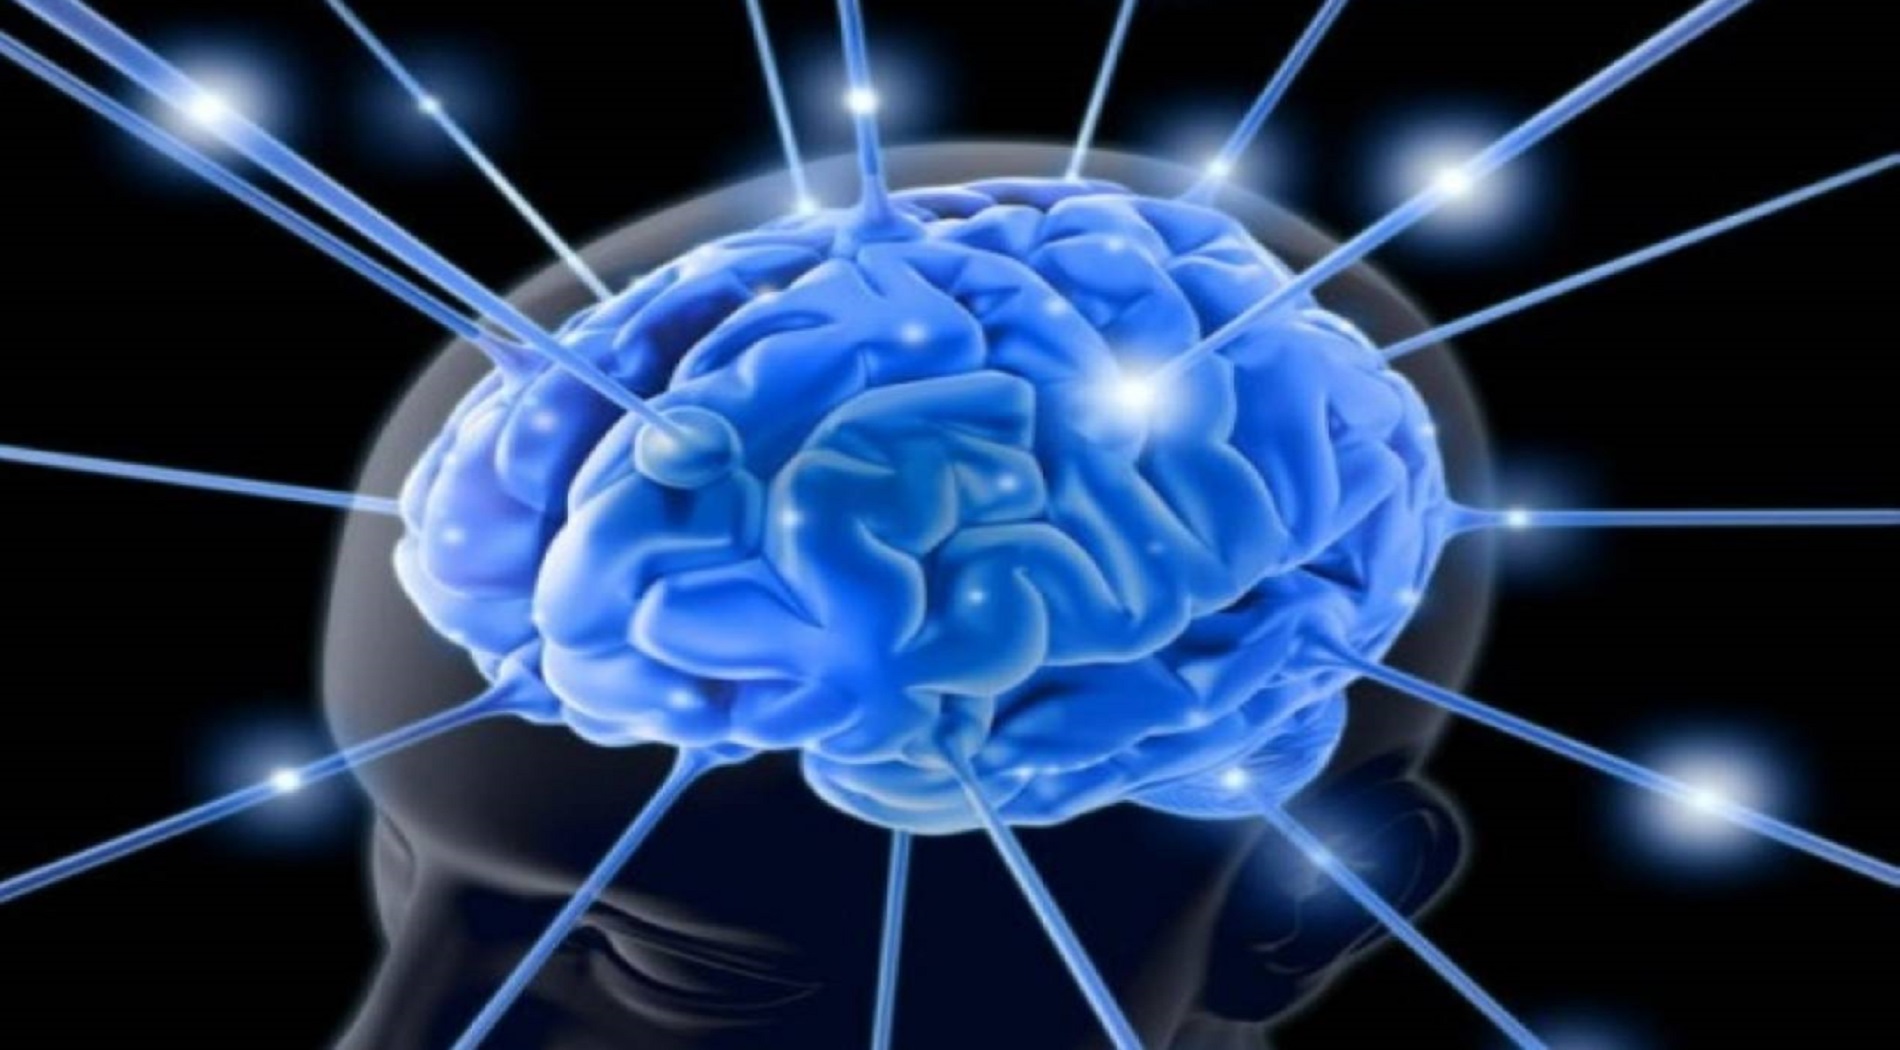 Μοντέλο εγκεφαλικής δραστηριότητας βρίσκει εφαρμογές σε νέες θεραπείες